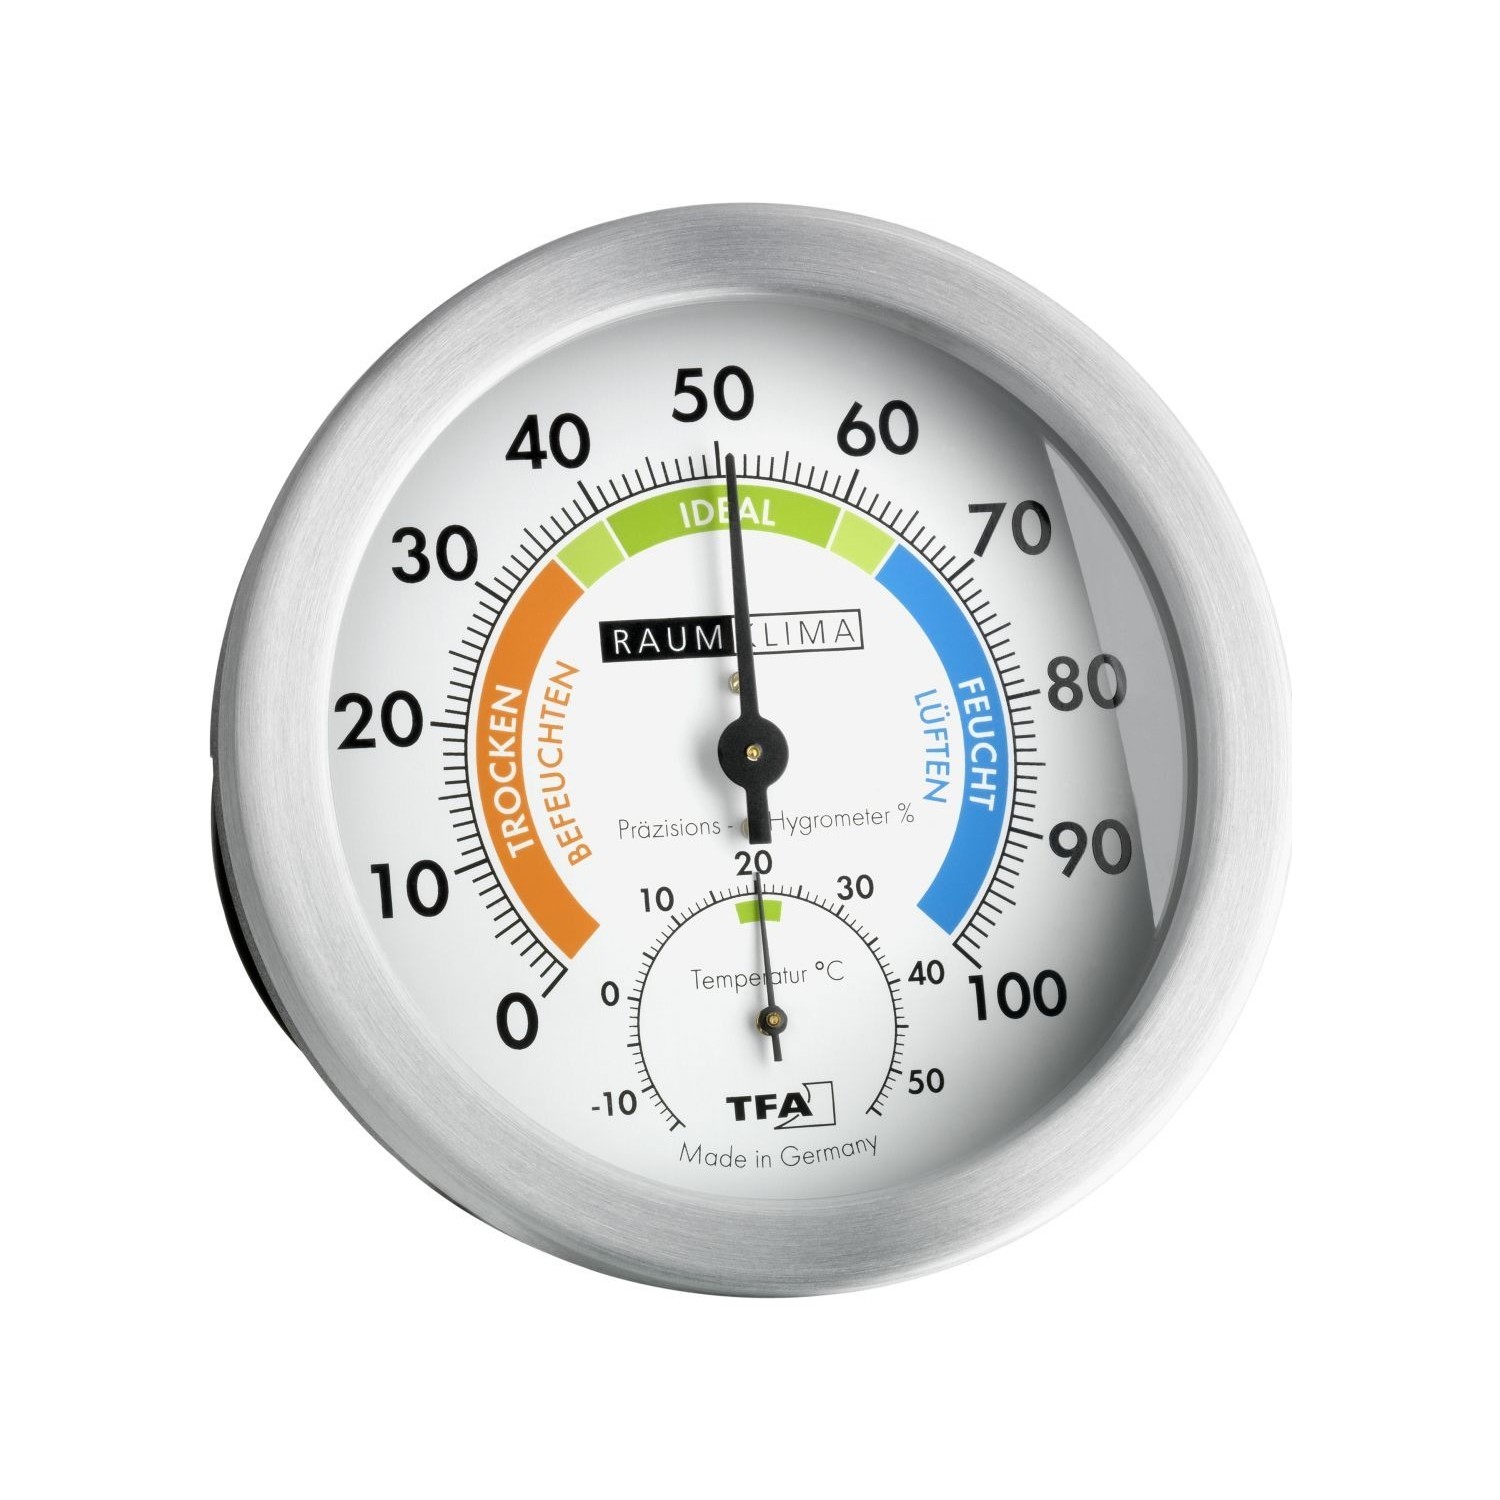 Измерения температуры и влажности воздуха. Термогигрометр TFA 45.2028. Гигрометр TFA 45.2000. Гигрометр TFA 45.2006. Гигрометр TFA 45.2004.